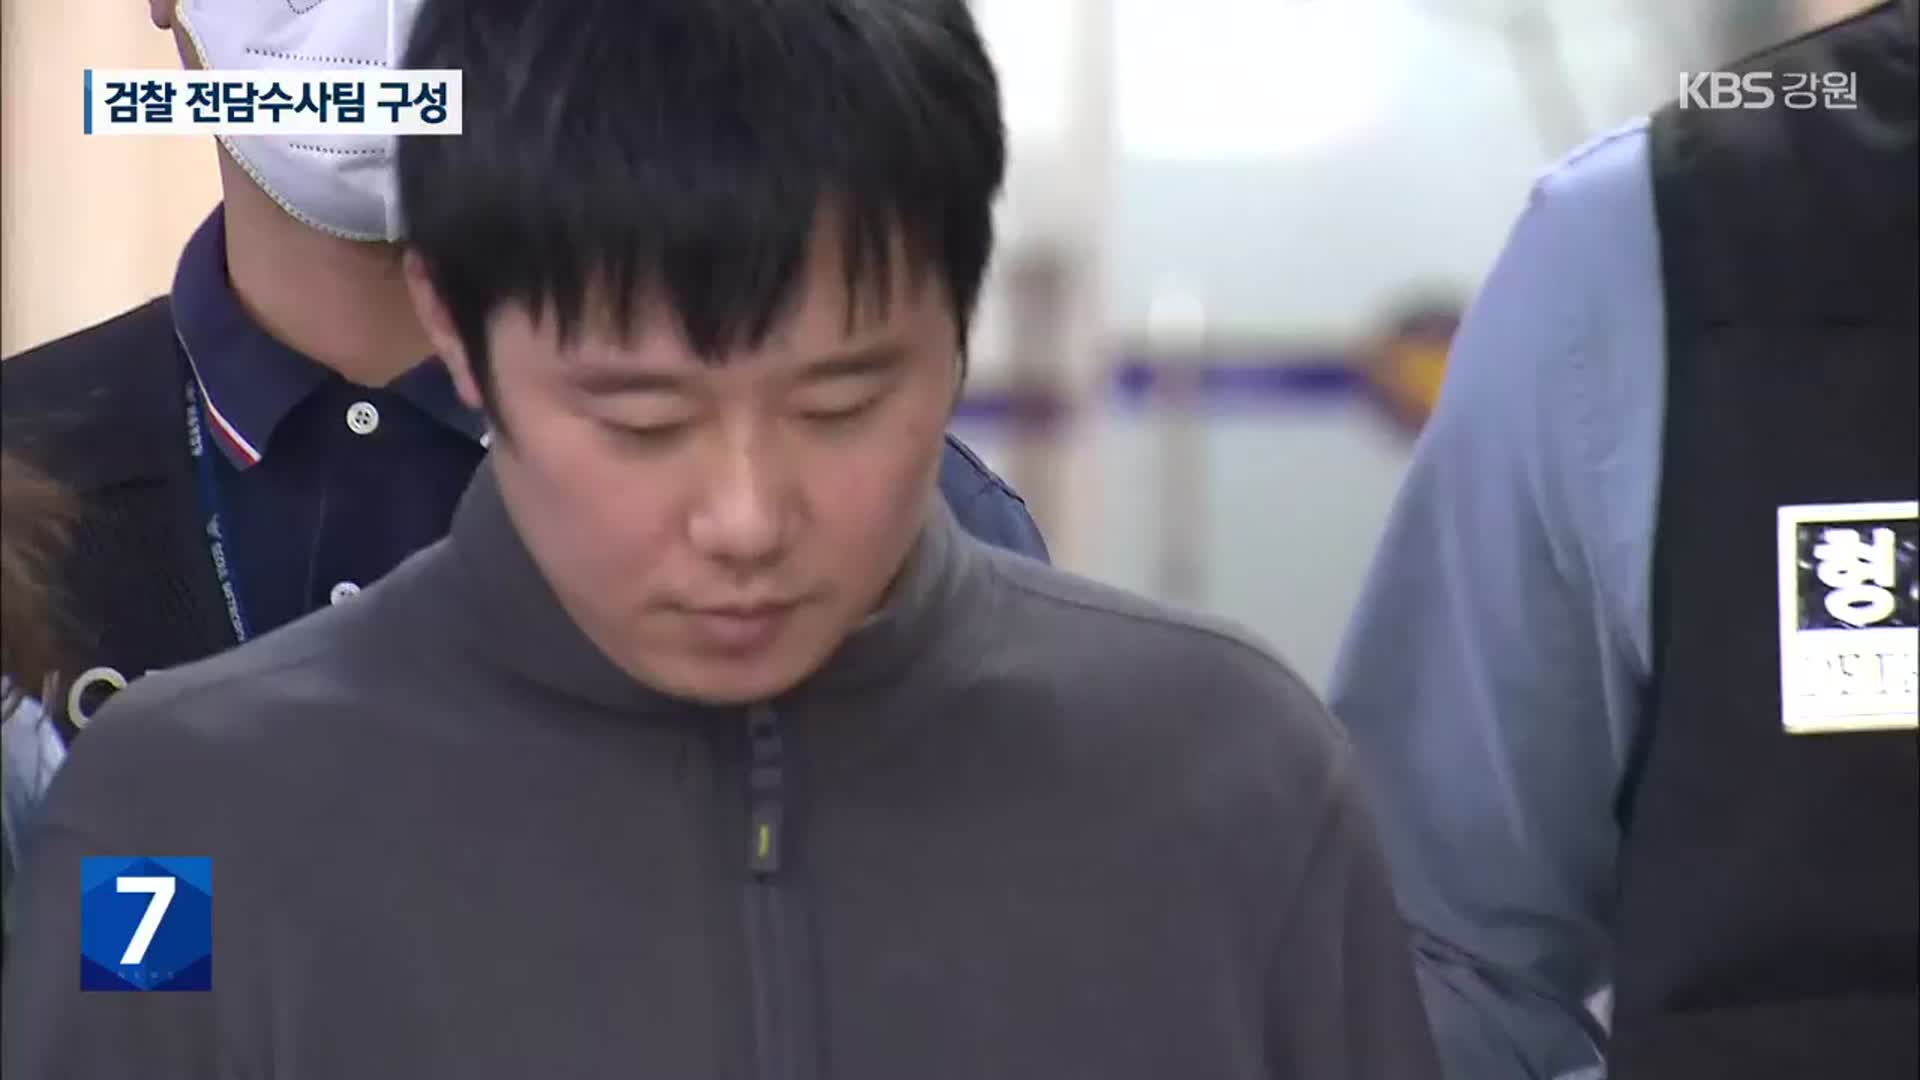 “전주환, 구형 받고 범행 결심”…검찰 전담수사팀 구성